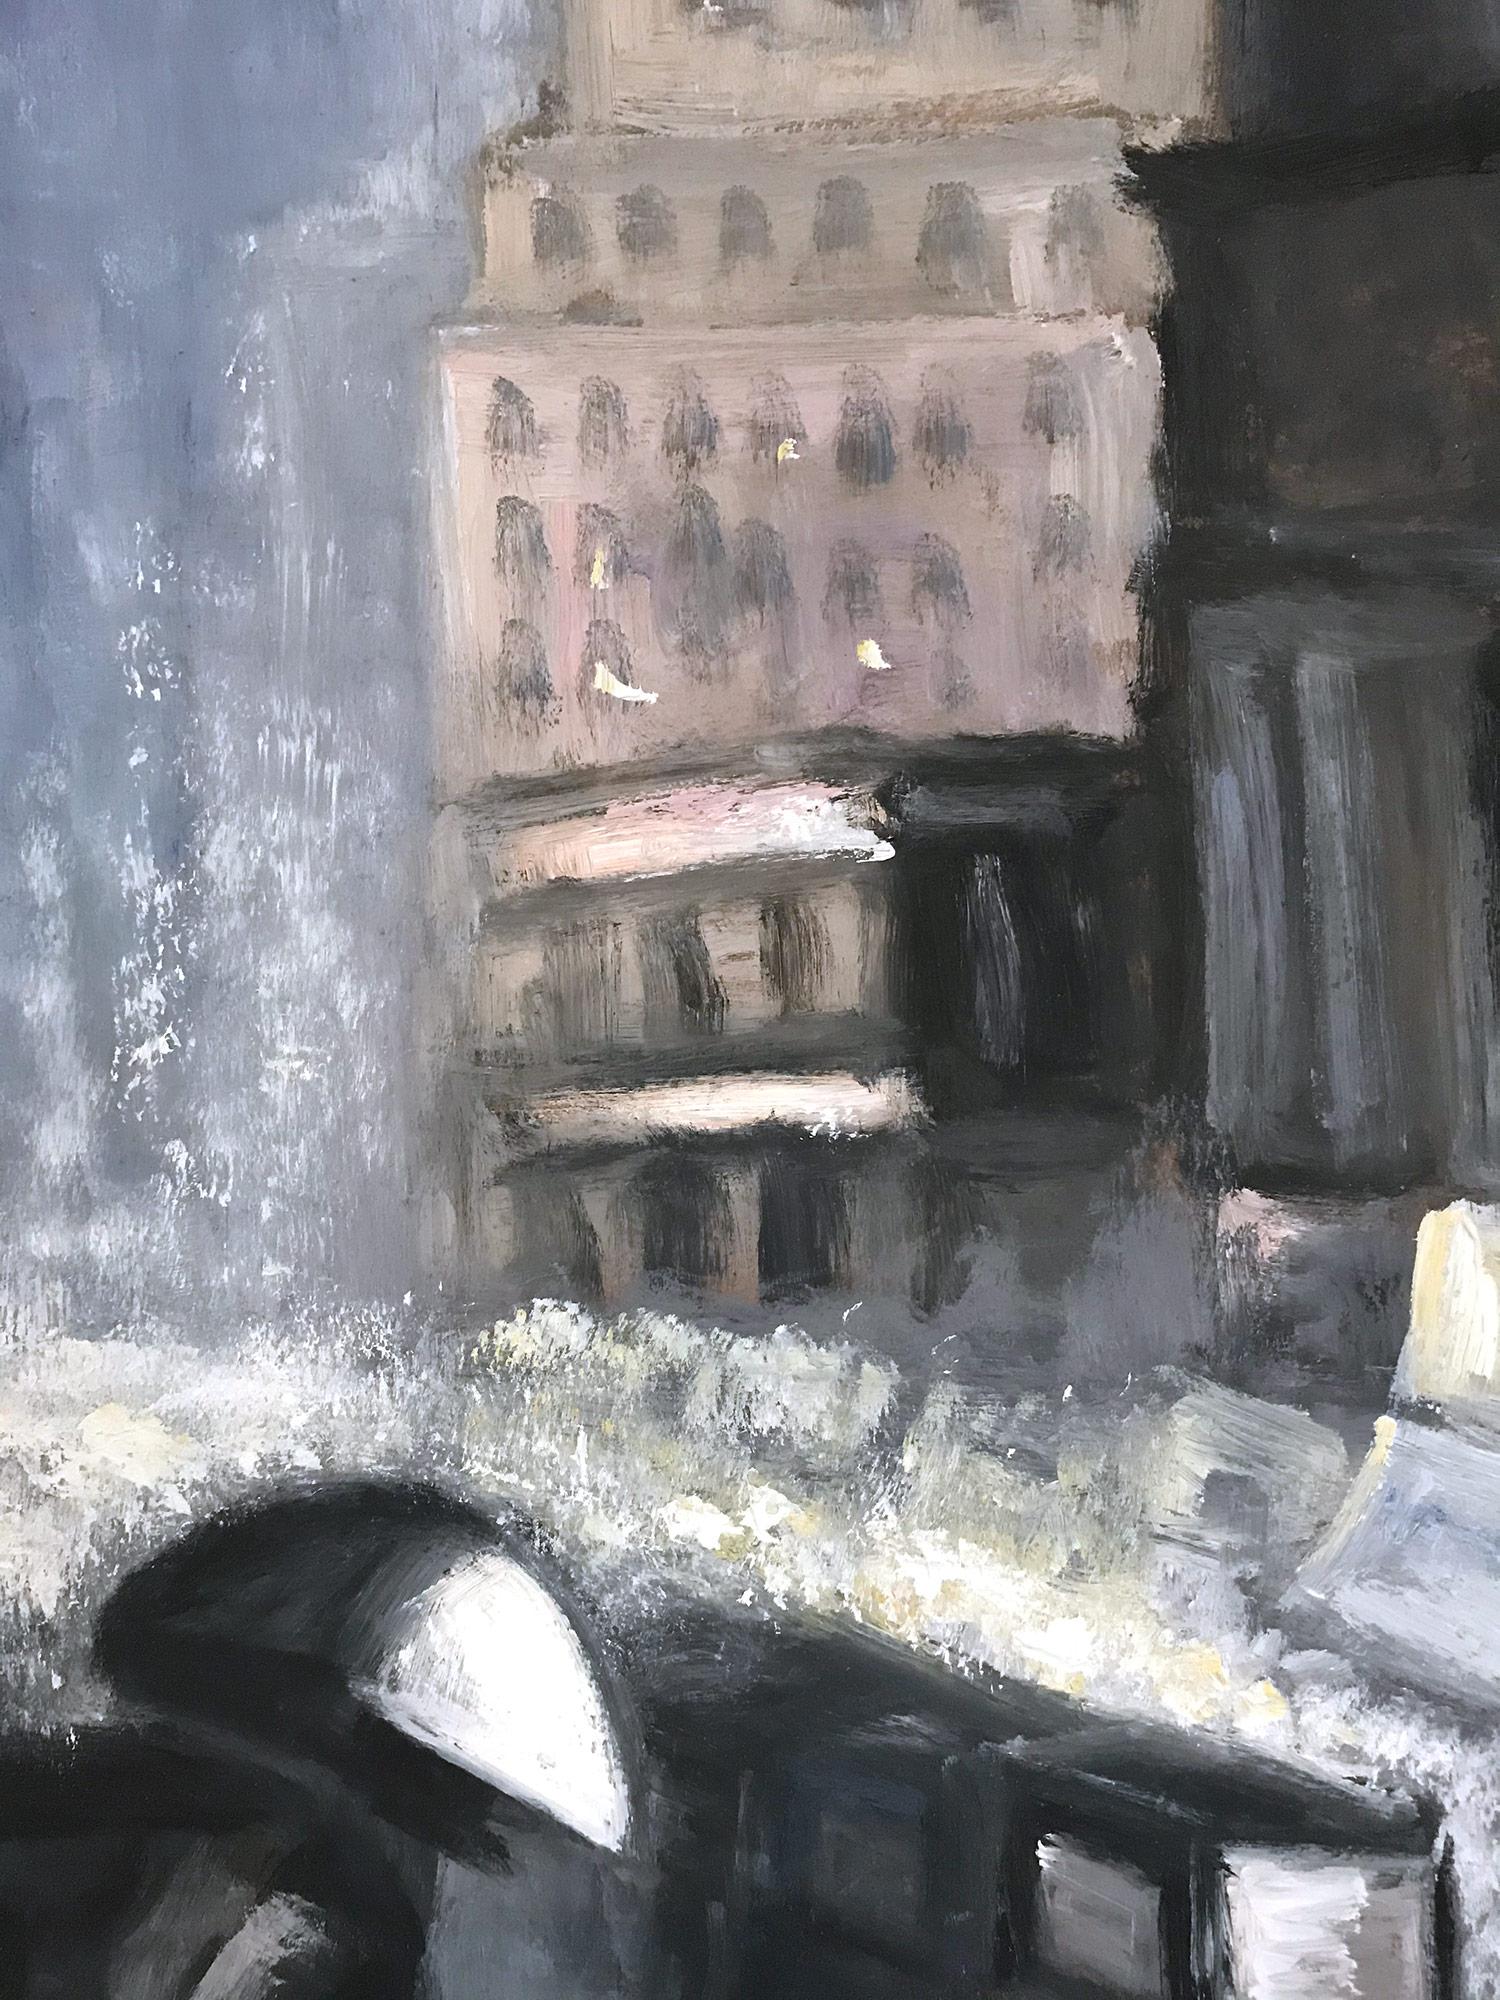 Cette peinture dépeint une scène impressionniste de New York par un jour de pluie dans le centre de Manhattan, avec un beau coup de pinceau et des couleurs fantaisistes. L'œuvre imite le style de l'école Ashcan, illustrant Manhattan et l'époque du